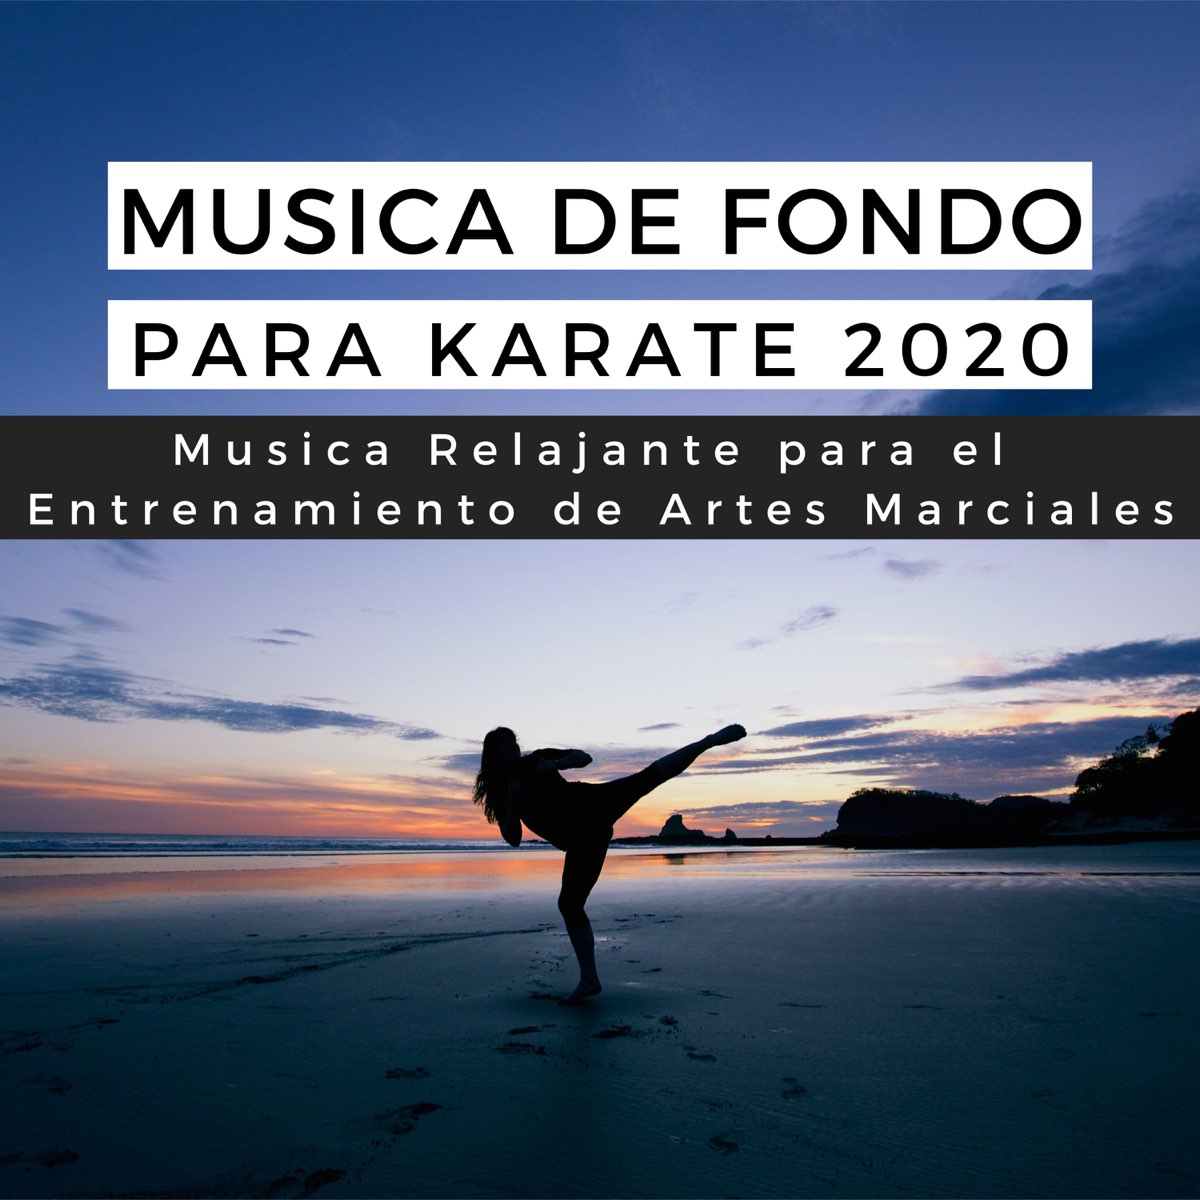 Música de Fondo para Karate 2020 - Música Relajante para el Entrenamiento de  Artes Marciales by Ismael Evora on Apple Music